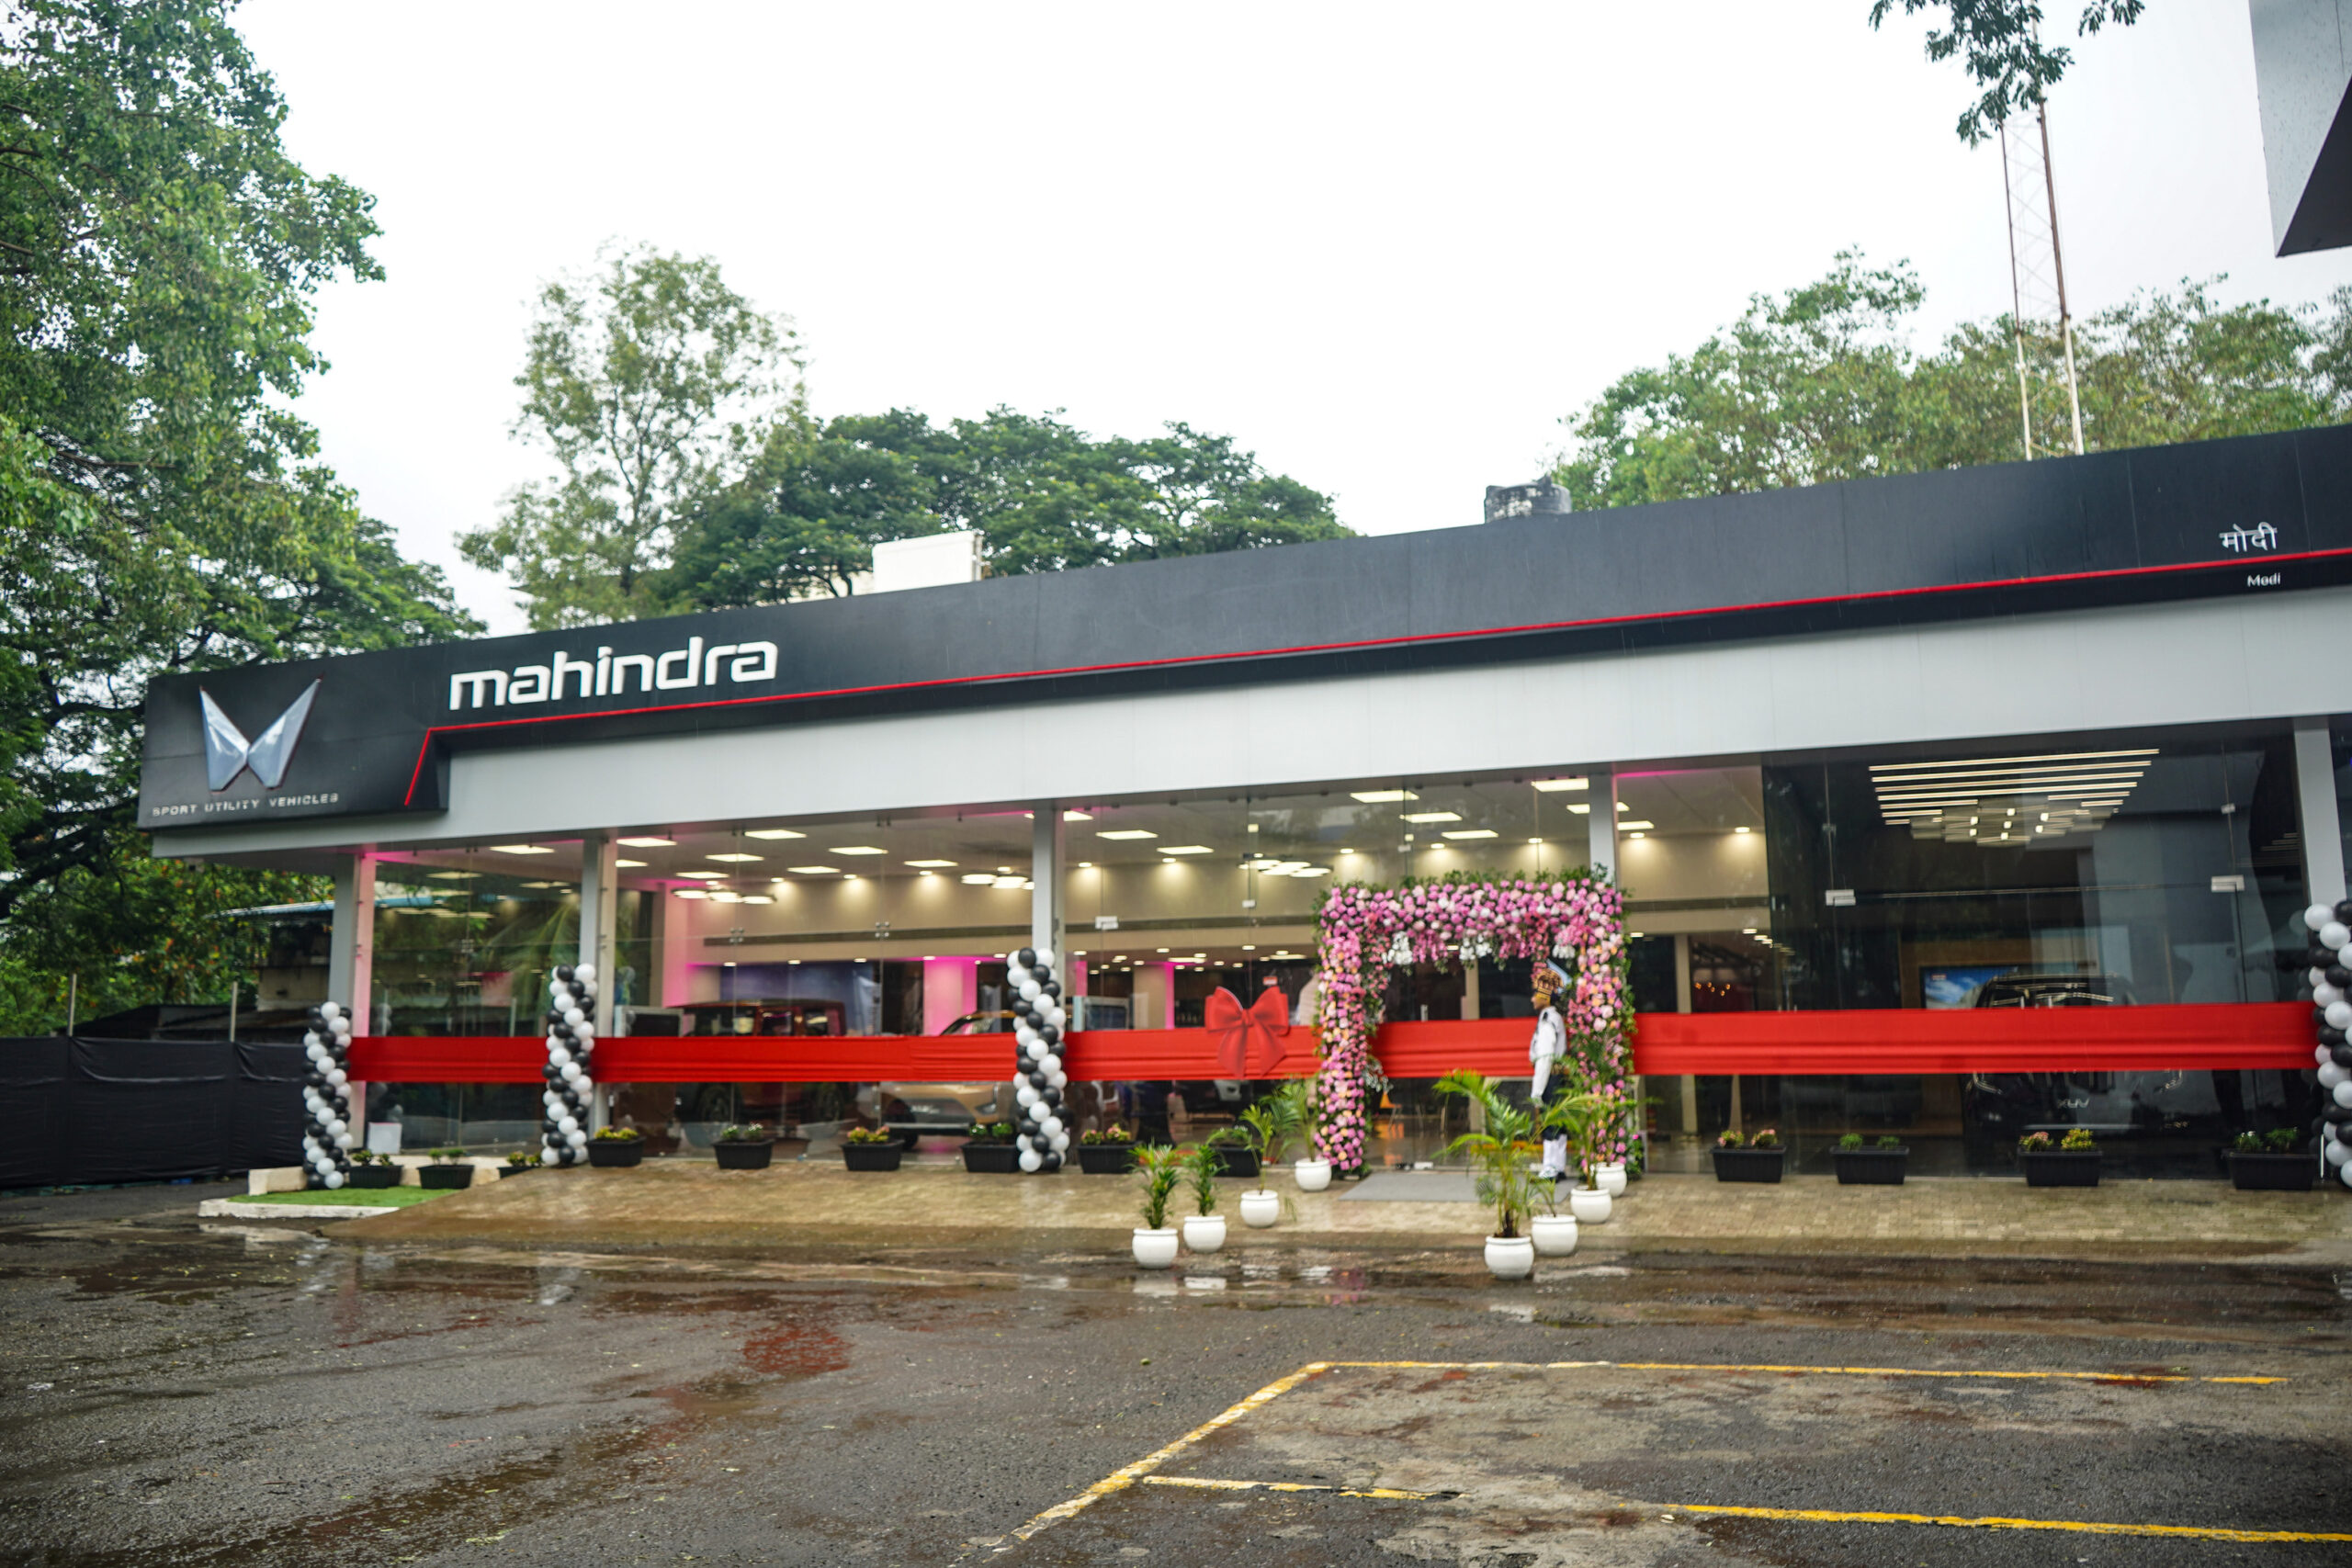 Expansion at Homebase! Mahindra New Thane Dealership Inaugurated 